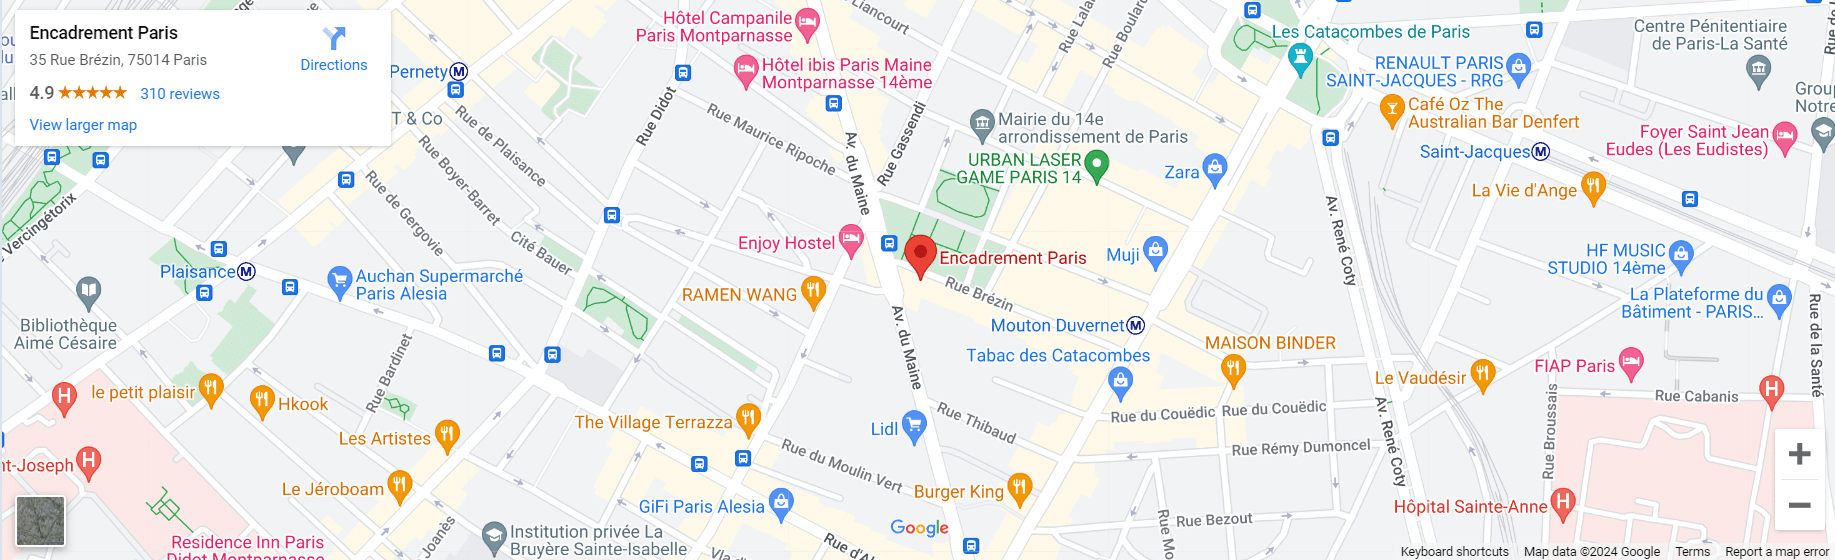 plan du magasin Encadrement Paris situe a Paris 14